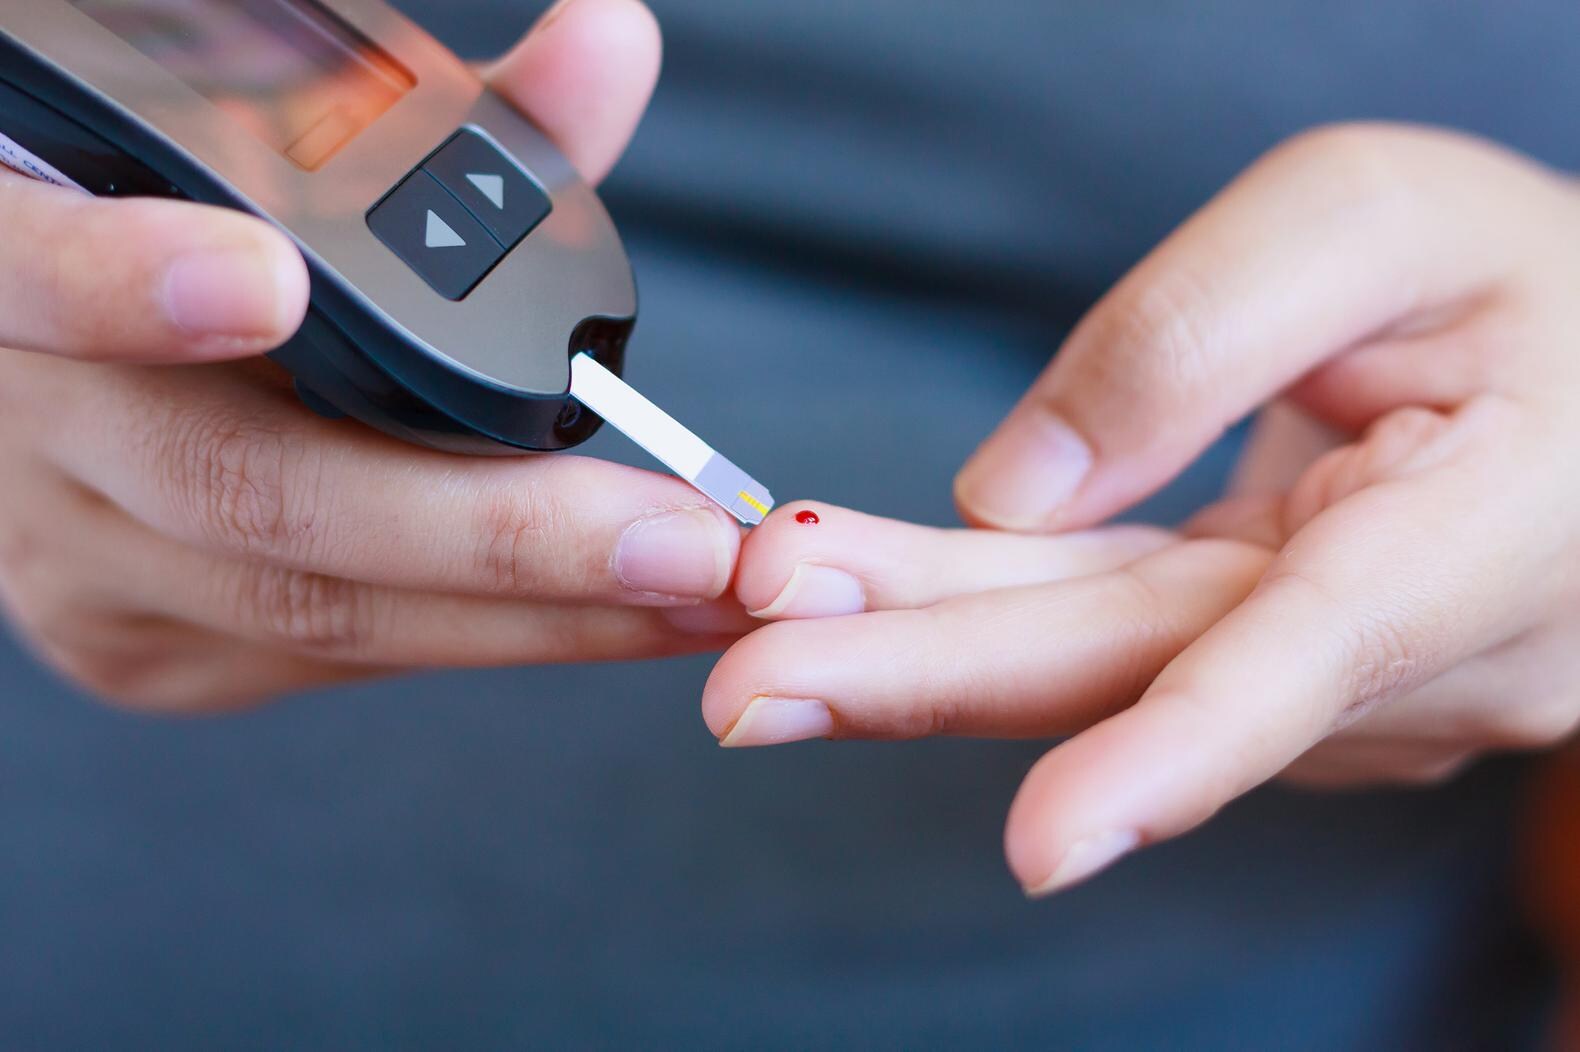 Dankzij 'slimme' contactlens hoeven diabetespatiënten straks mogelijk minder vaak bloed te prikken